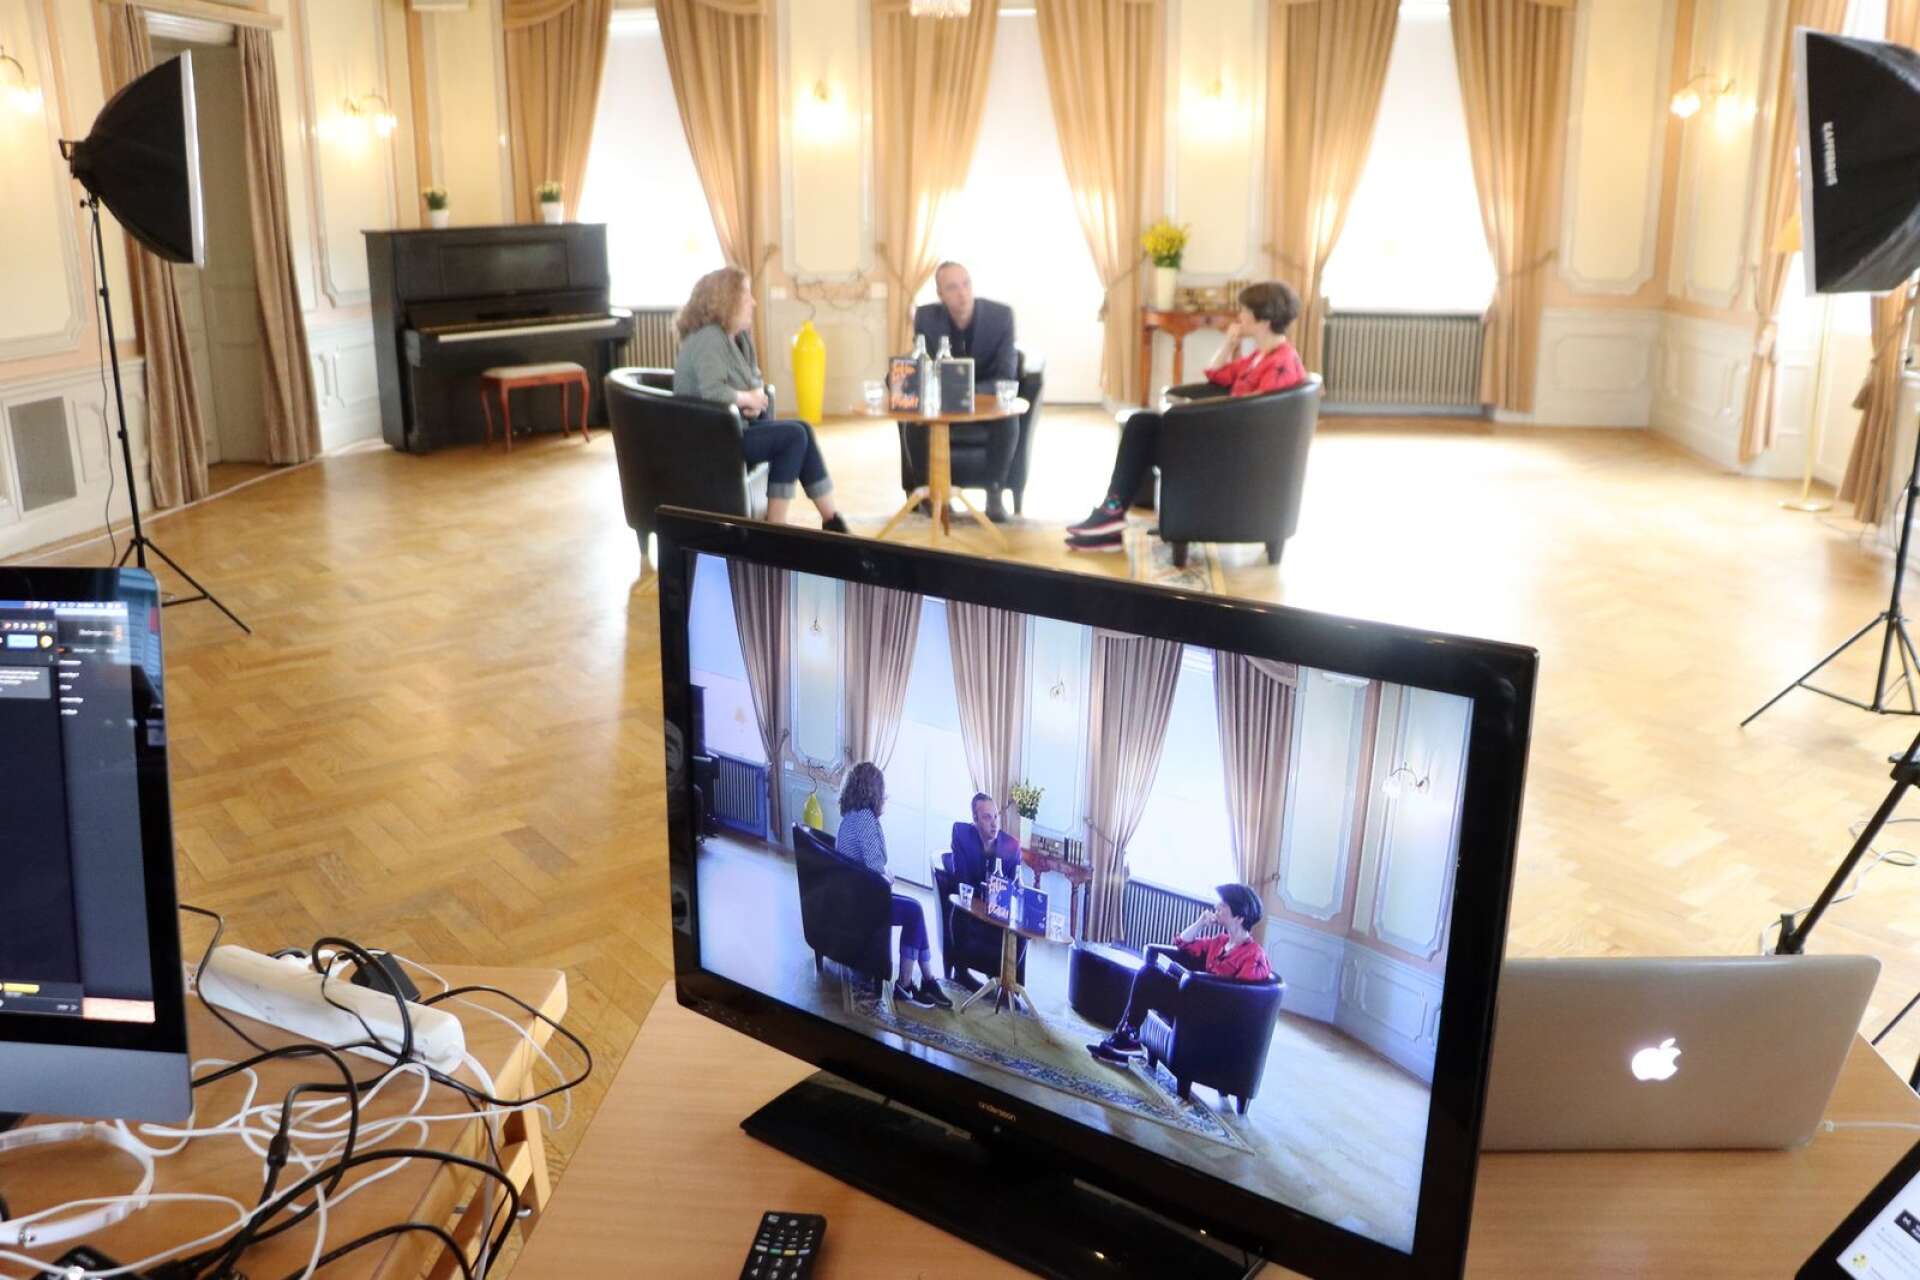 Författarsamtalen under de digitala bokdagarna sändes live från stadshotellet i Åmål. Sist ut var Martin Schibbye och Anna-Karin Palm.